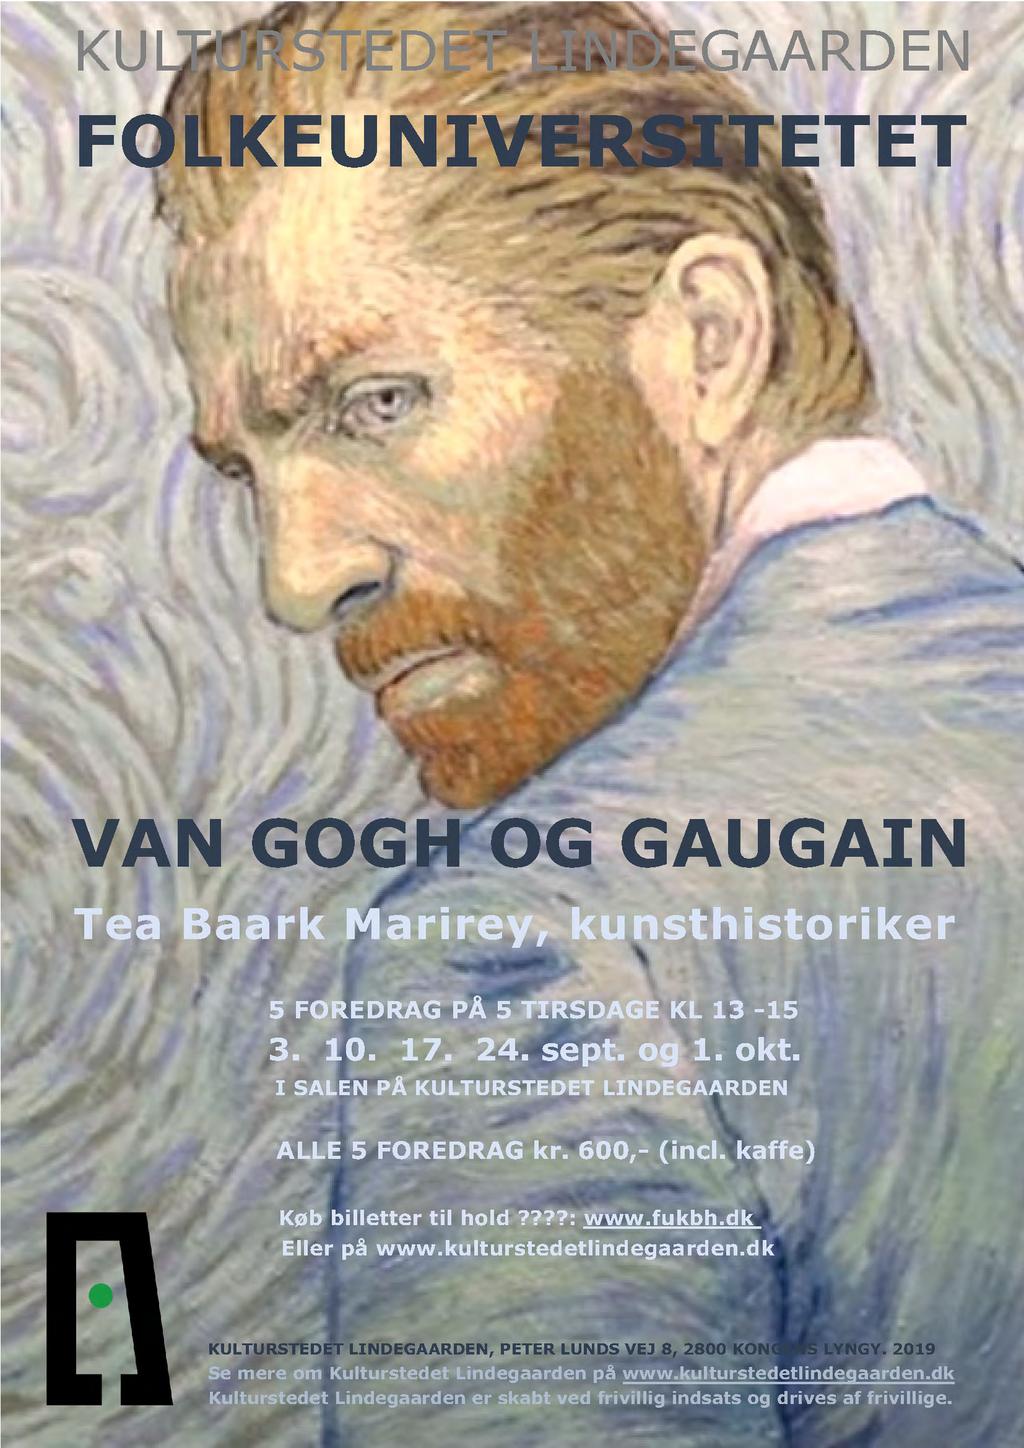 KU F OG GAUGAIN www.kulturstedetlindegaarden.